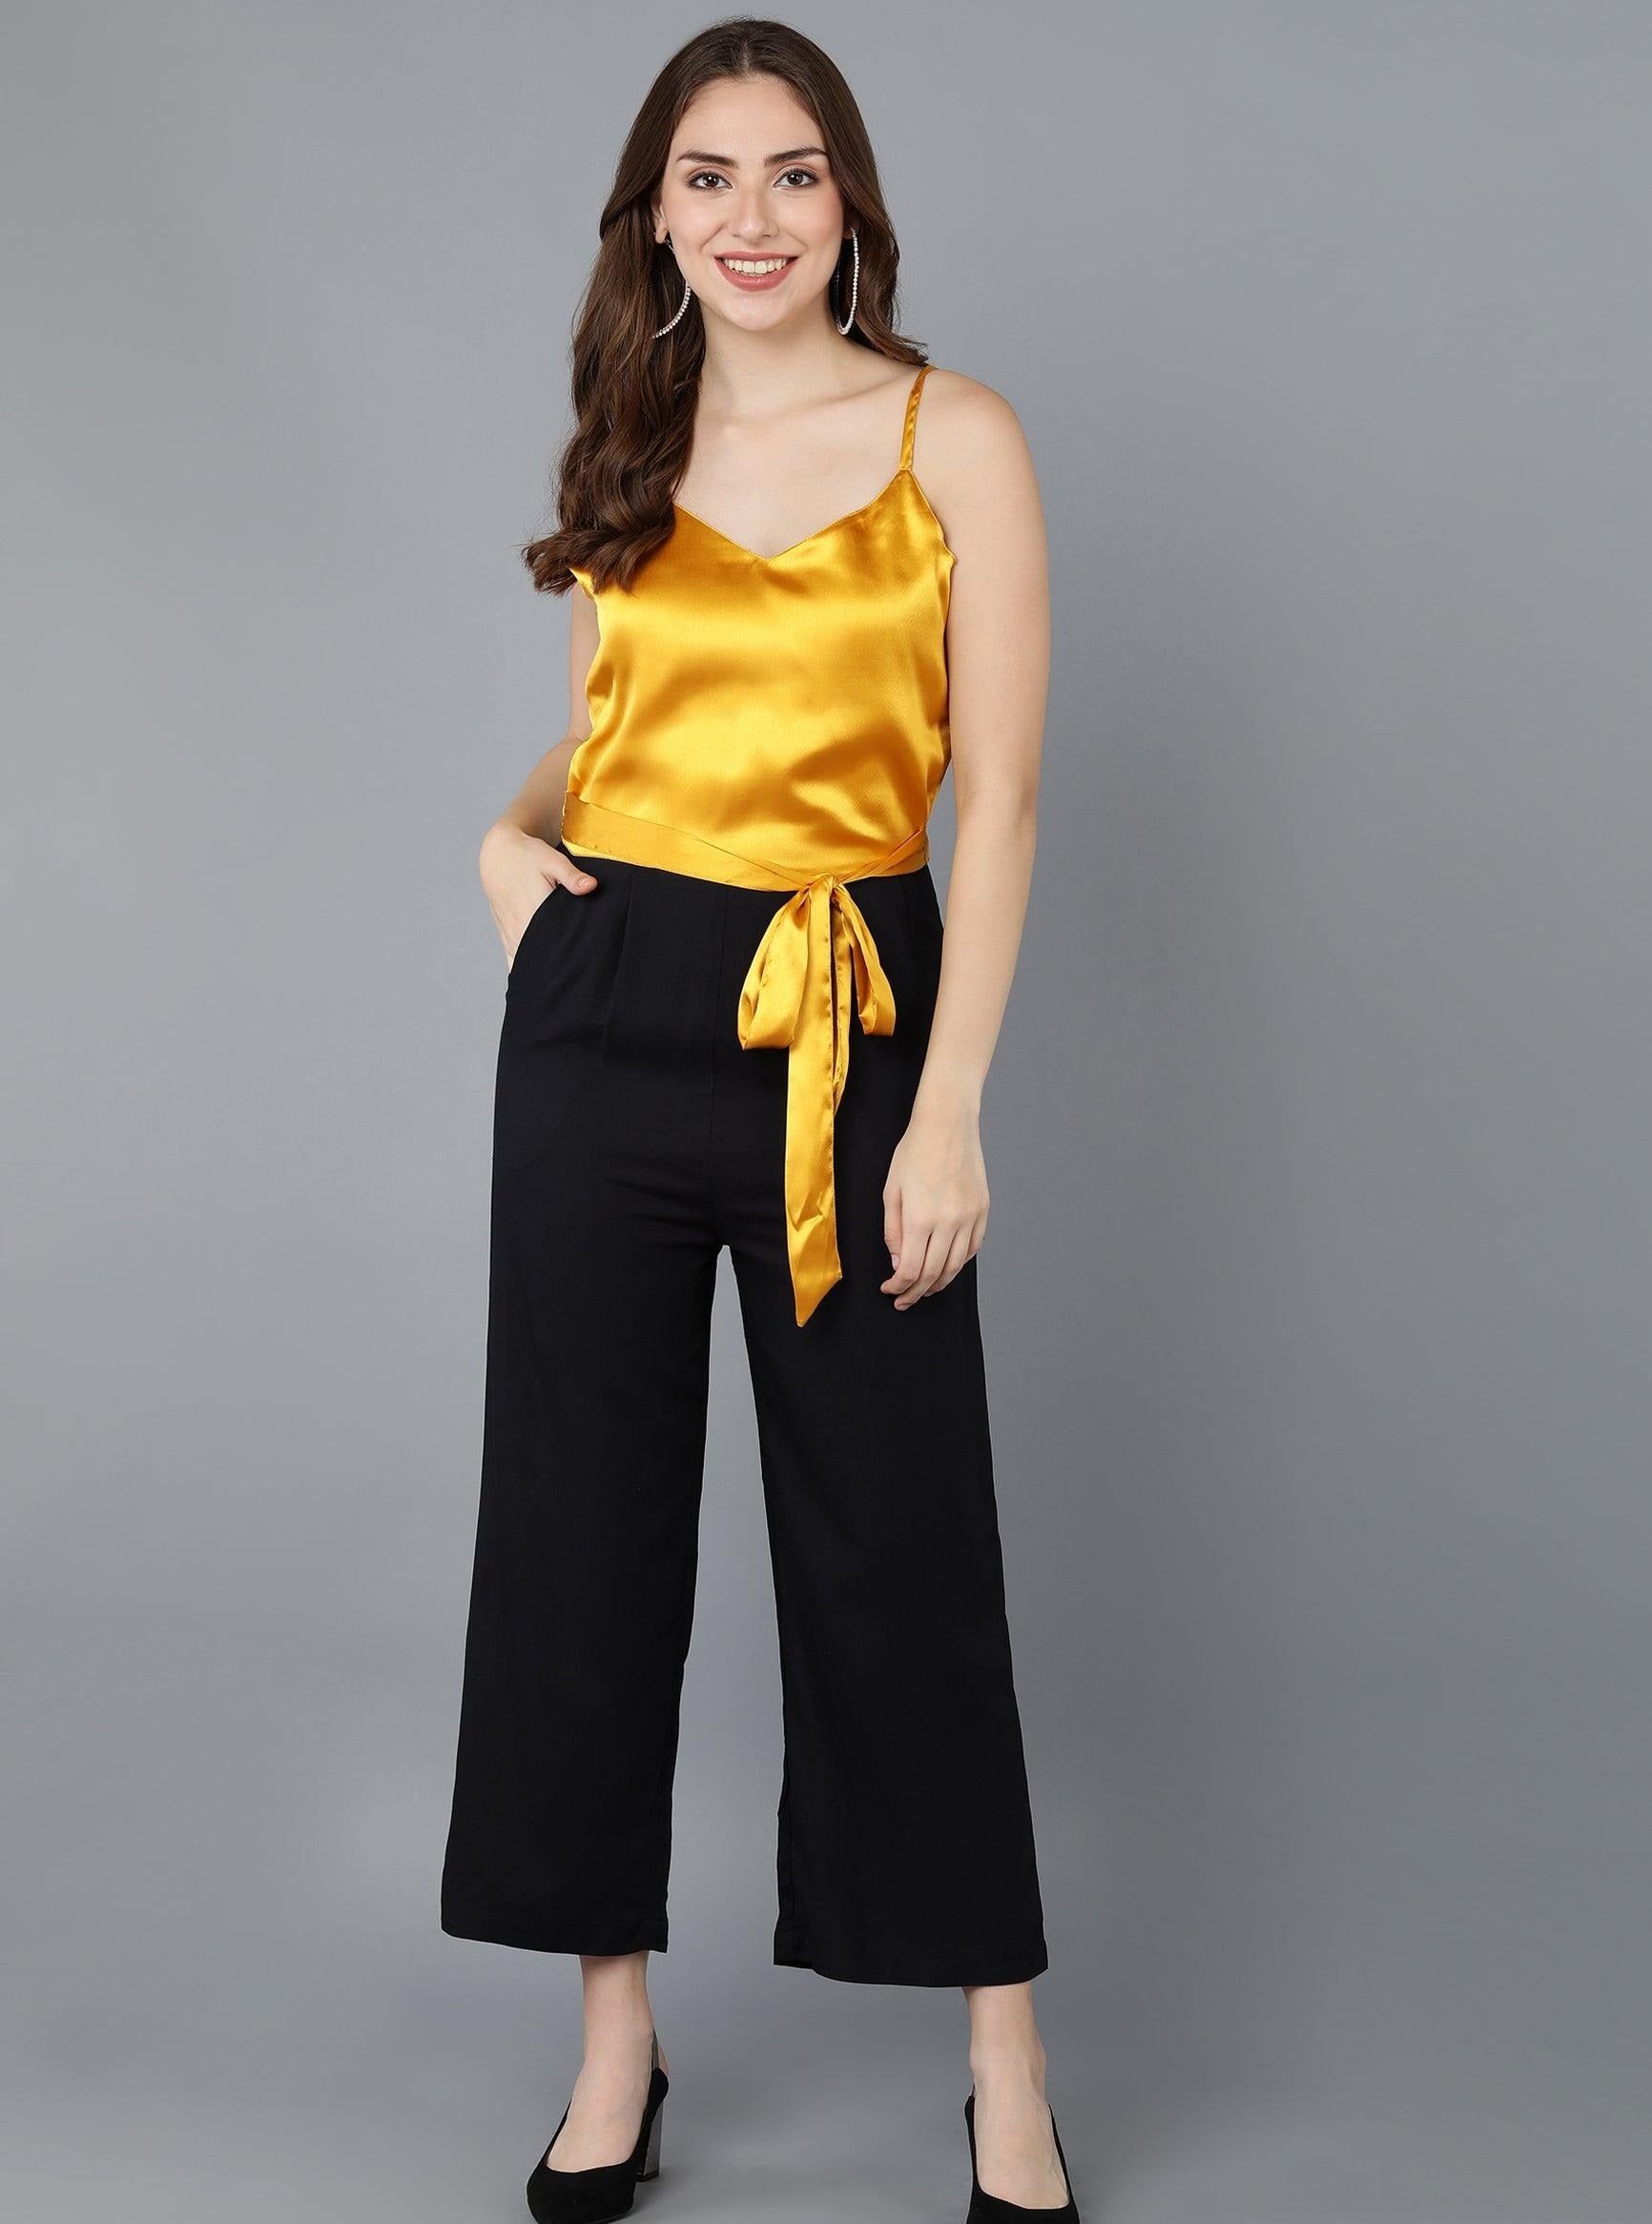 Mustard yellow pants | Outfit inspiration fall, Js everyday fashion, Fashion